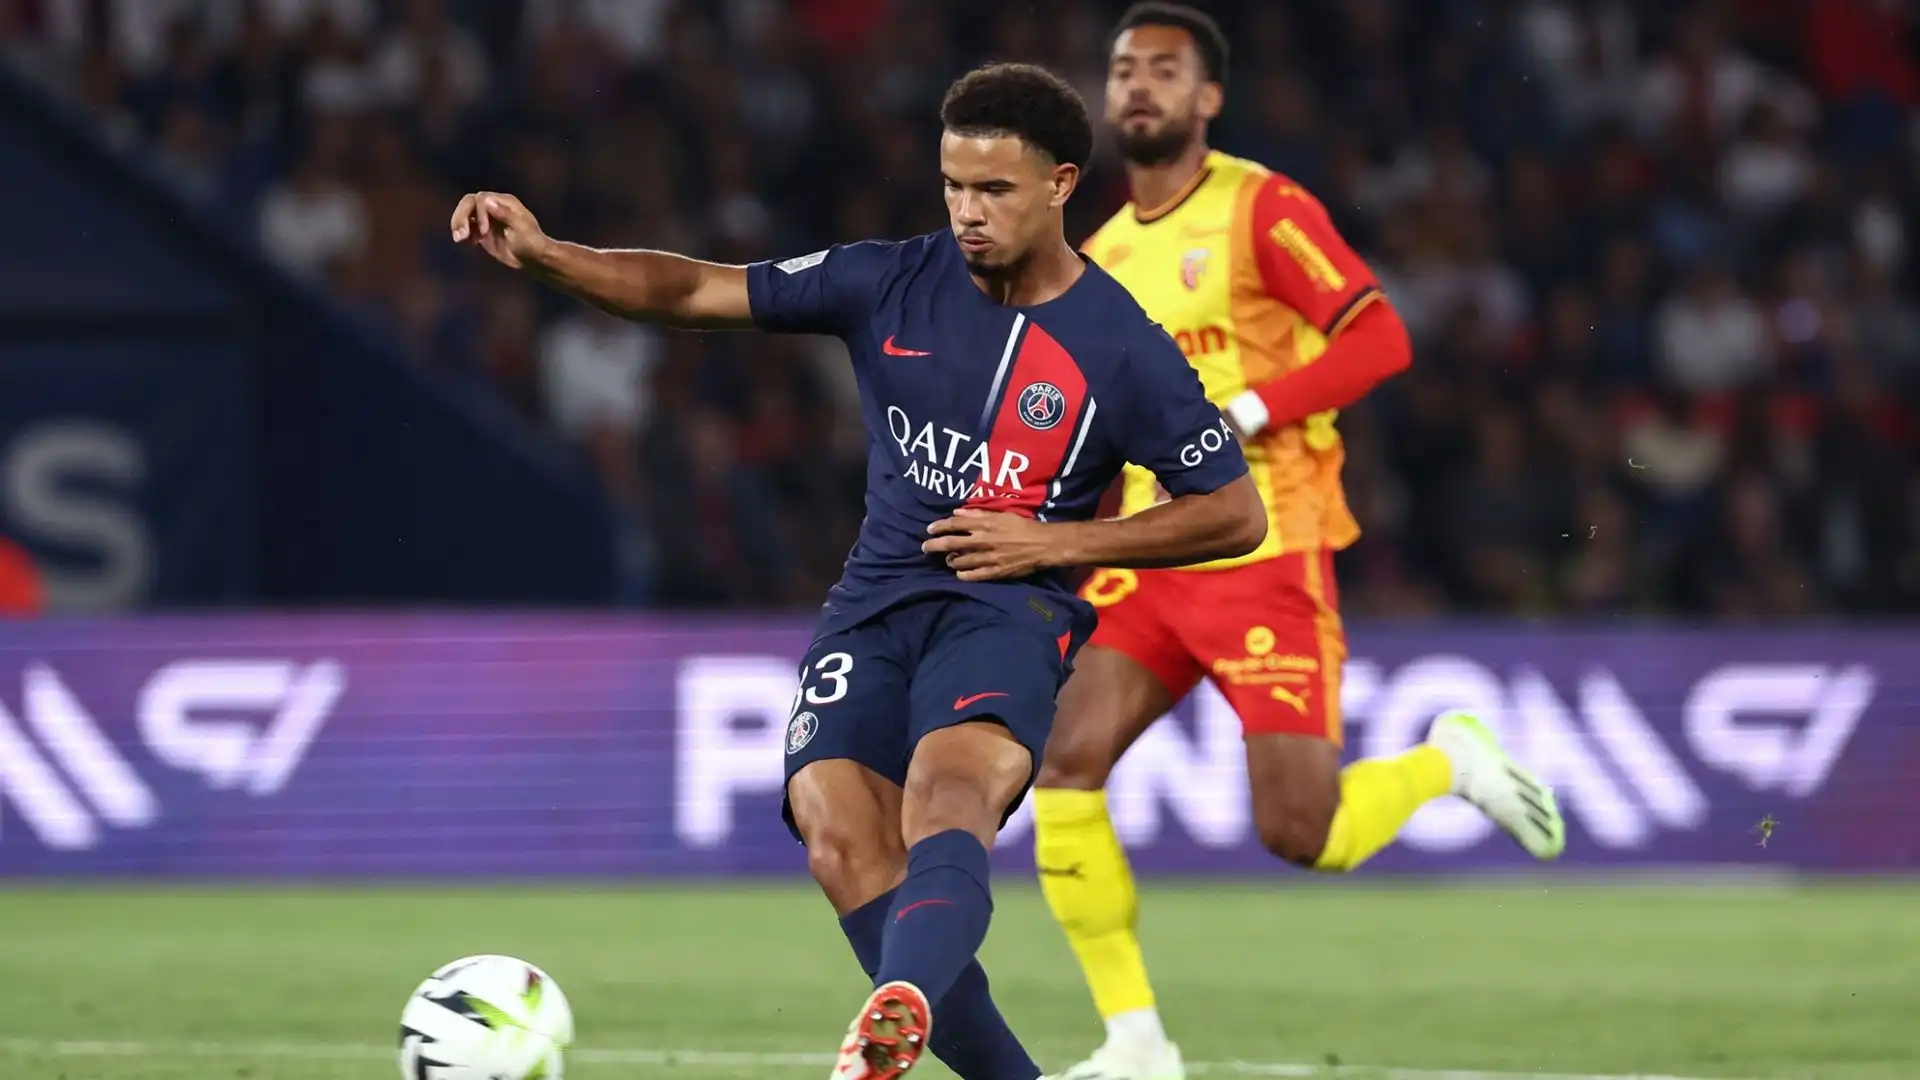 Il giovanissimo centrocampista francese ha realizzato due assist contro il Milan, contribuendo alla vittoria per 3-0 del Psg